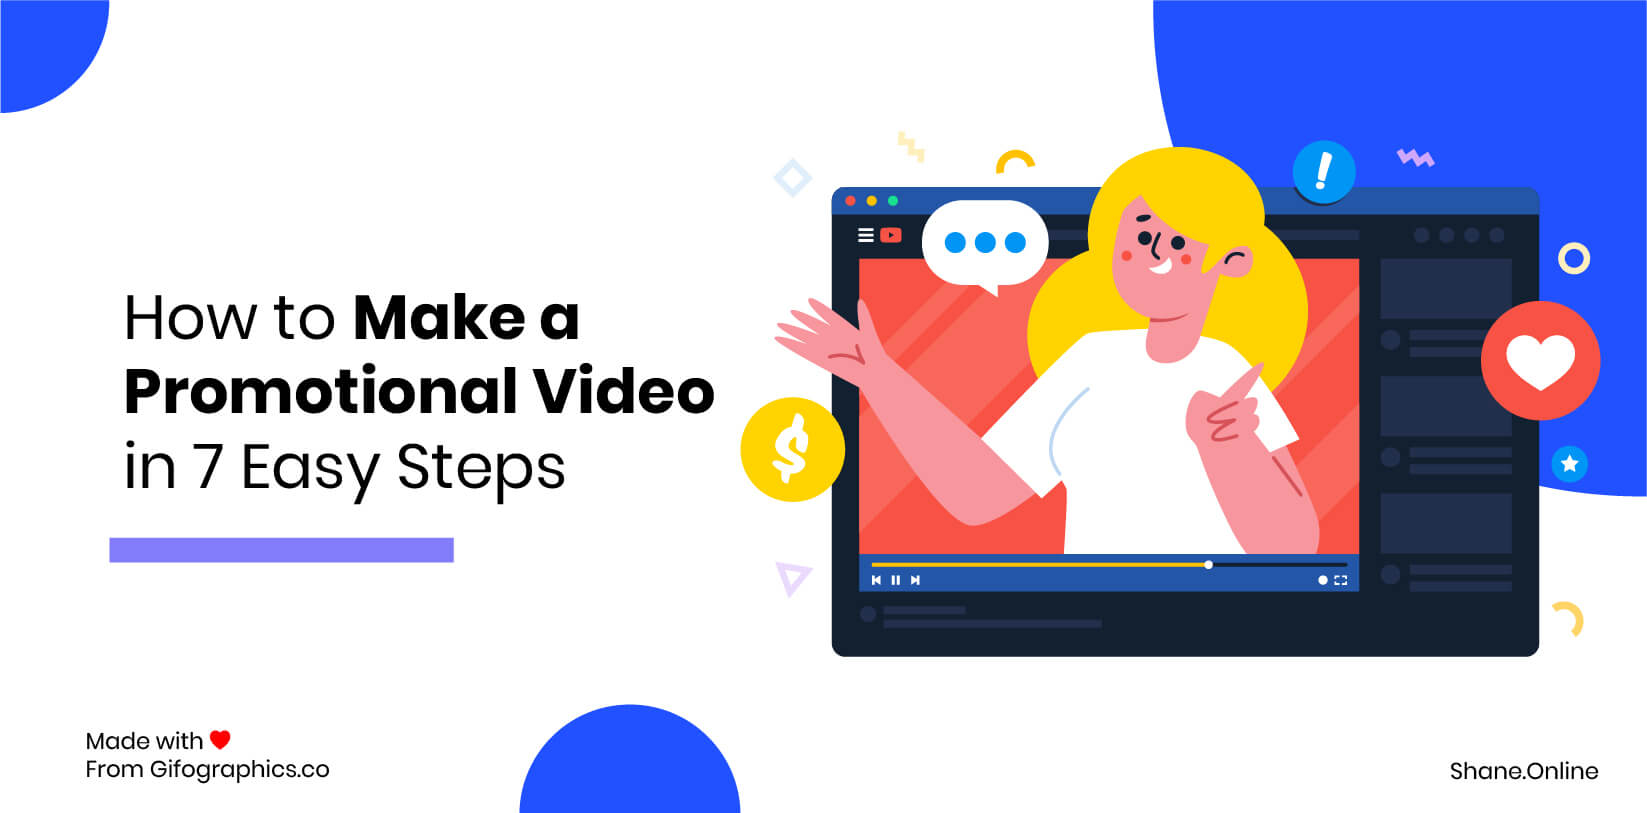 Comment faire une vidéo promotionnelle en 7 étapes faciles